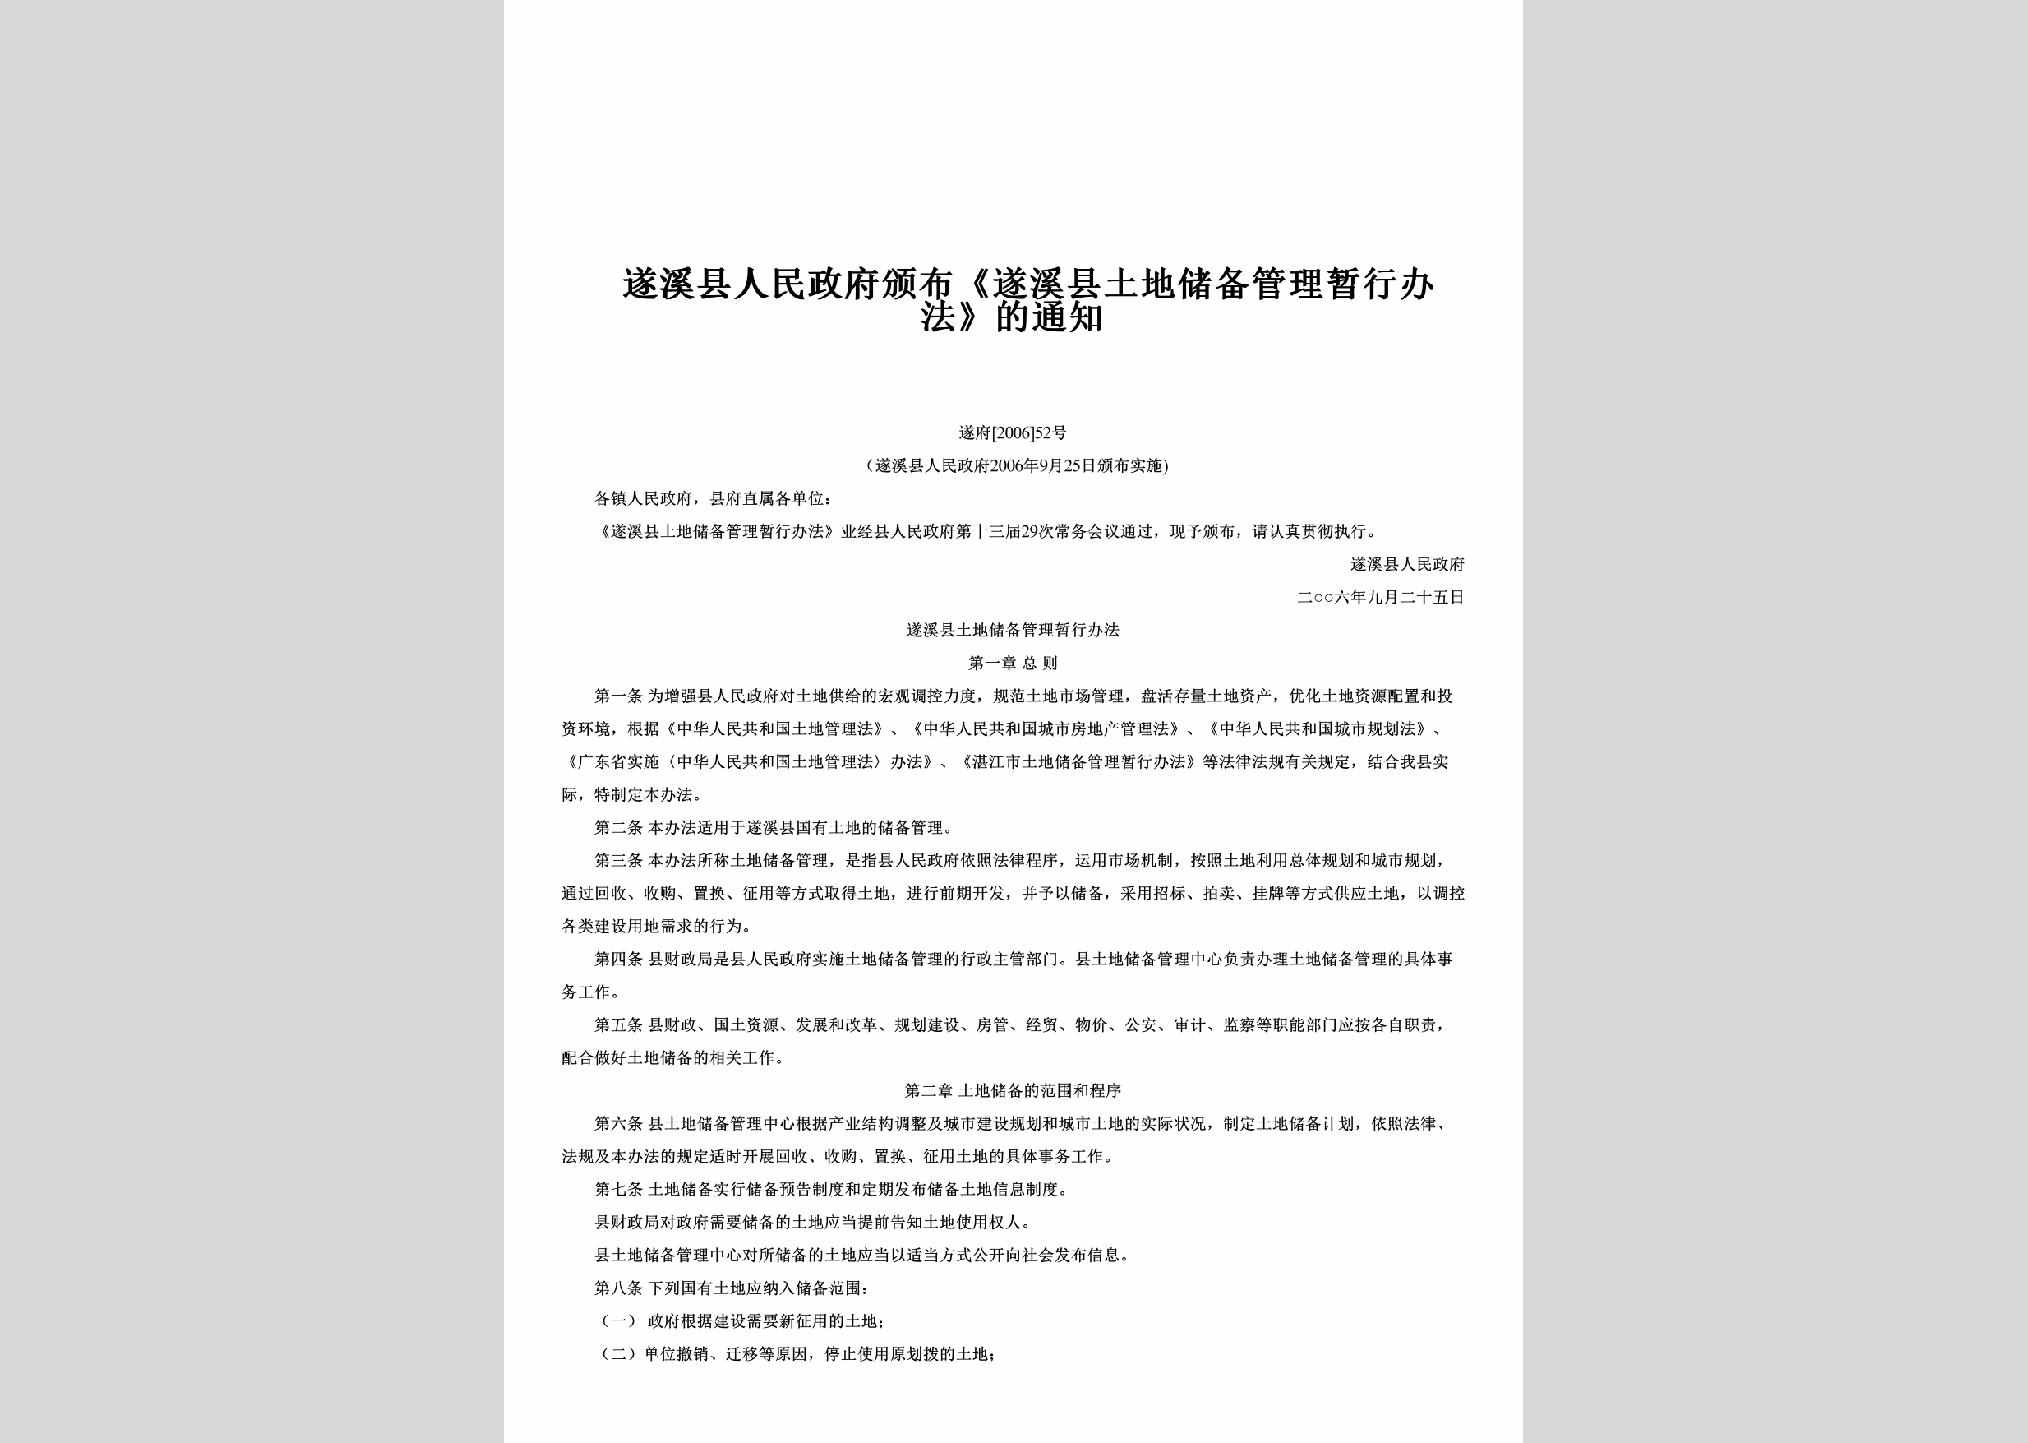 遂府[2006]52号：颁布《遂溪县土地储备管理暂行办法》的通知